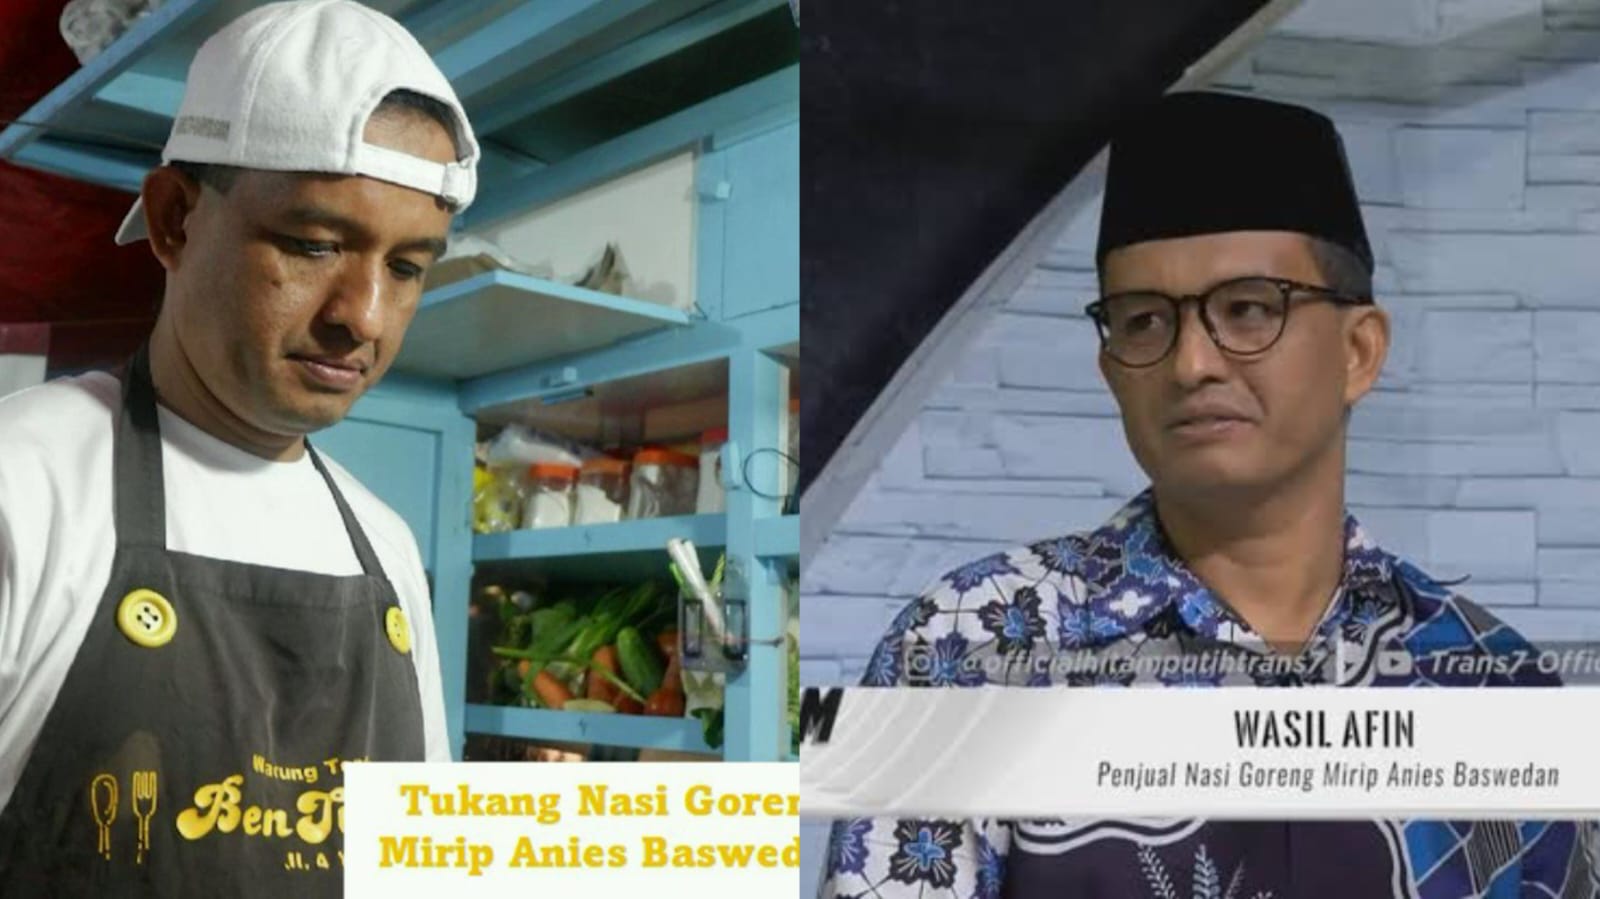 Abang Nasi Goreng Asal Wonosobo Mendadak Viral Karena Mirip Anies Baswedan, Netizen: Nasi Goreng Perubahan